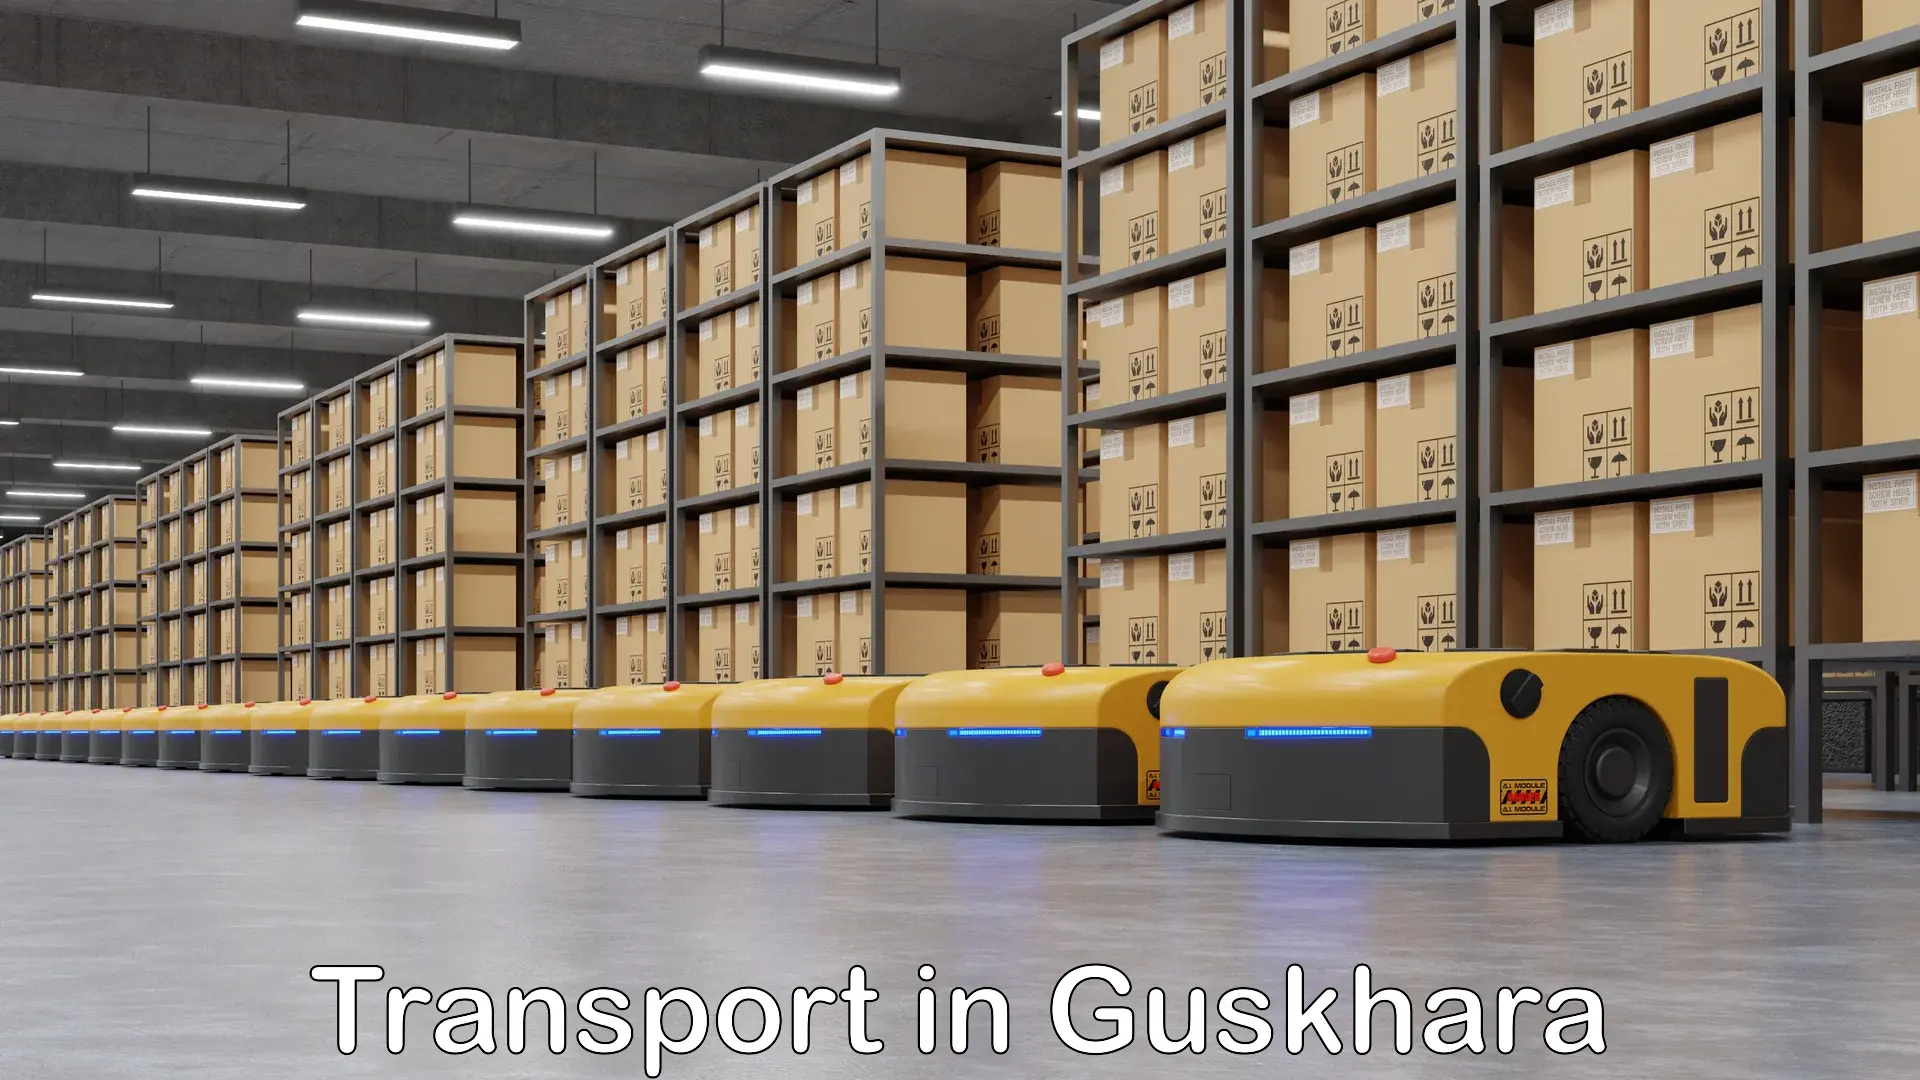 Intercity goods transport in Guskhara